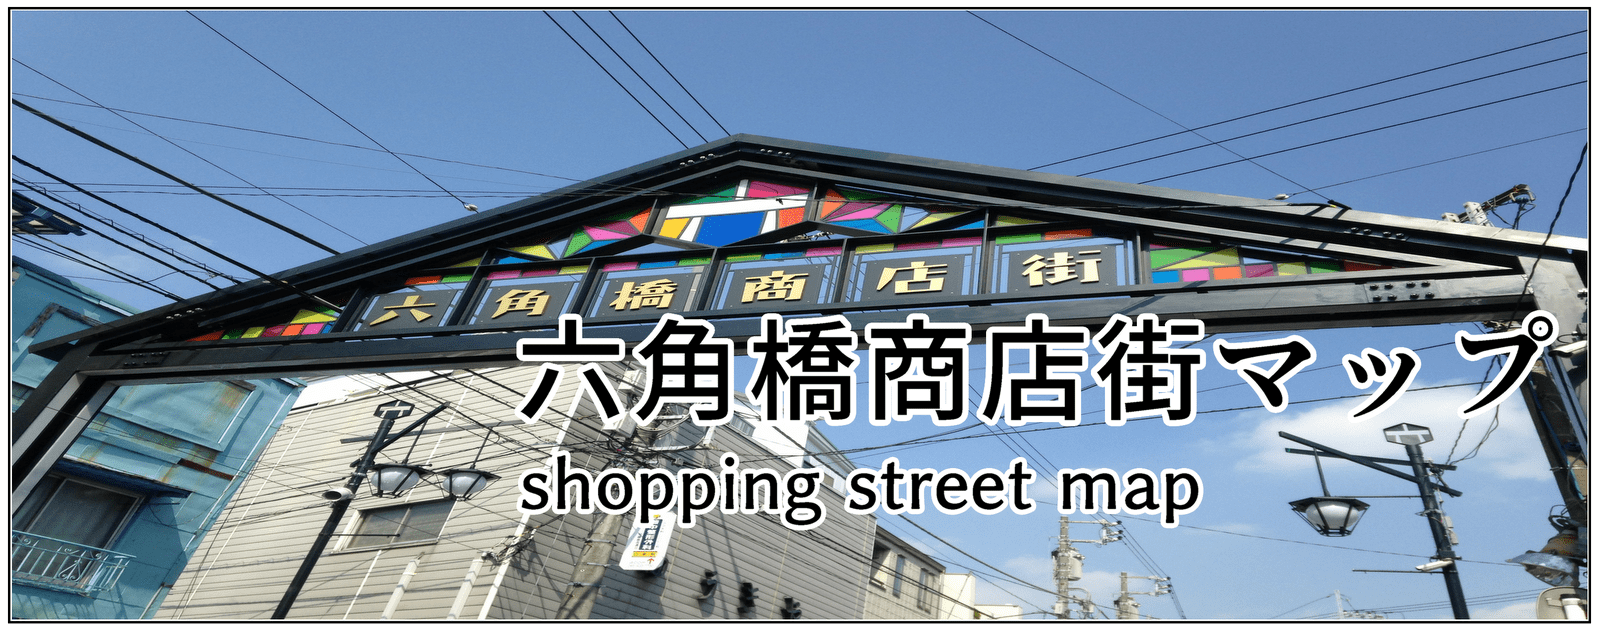 六角橋商店街マップはこちら